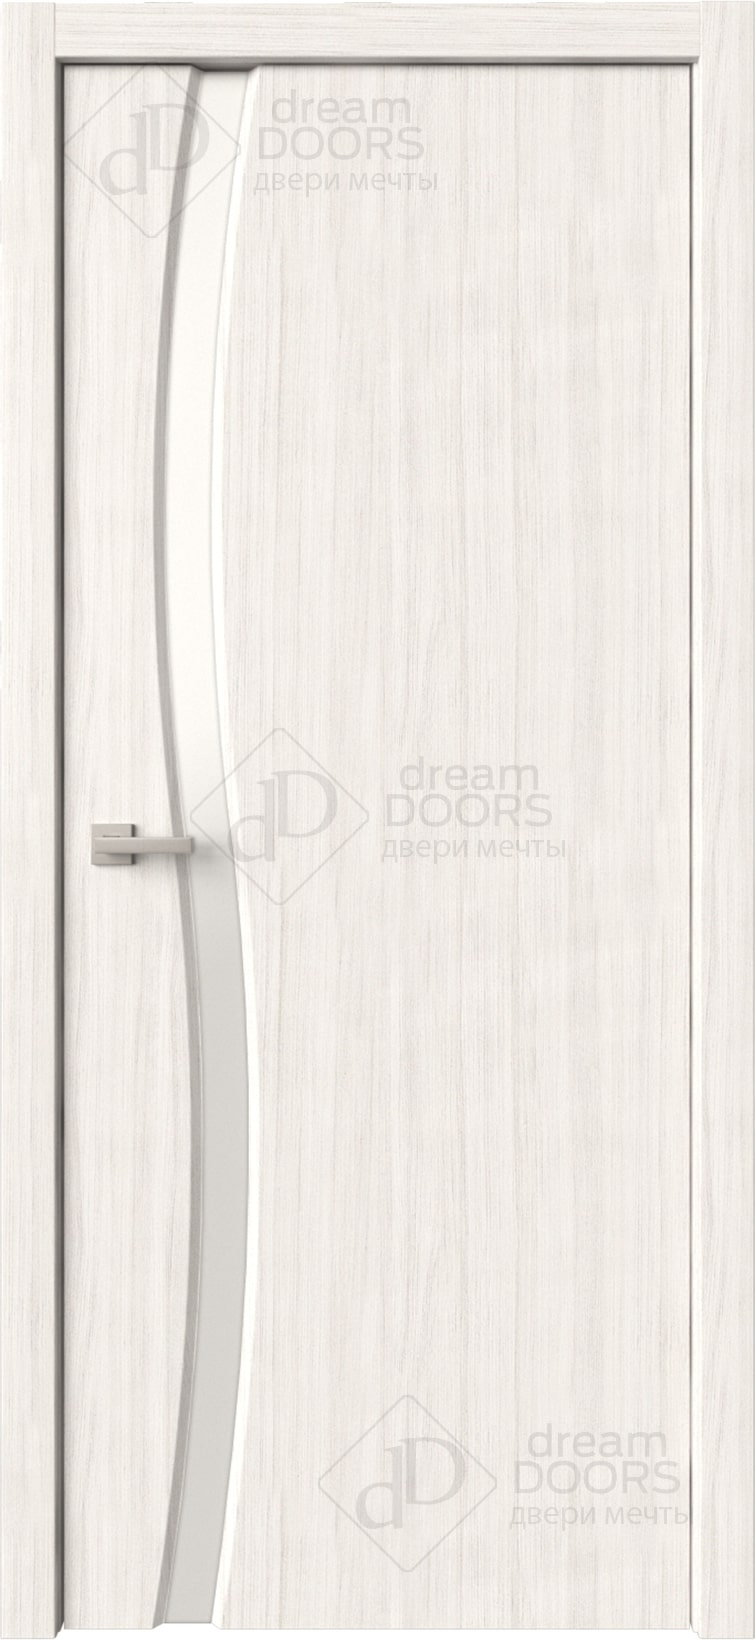 Dream Doors Межкомнатная дверь Сириус 1 узкое ДО, арт. 20080 - фото №6